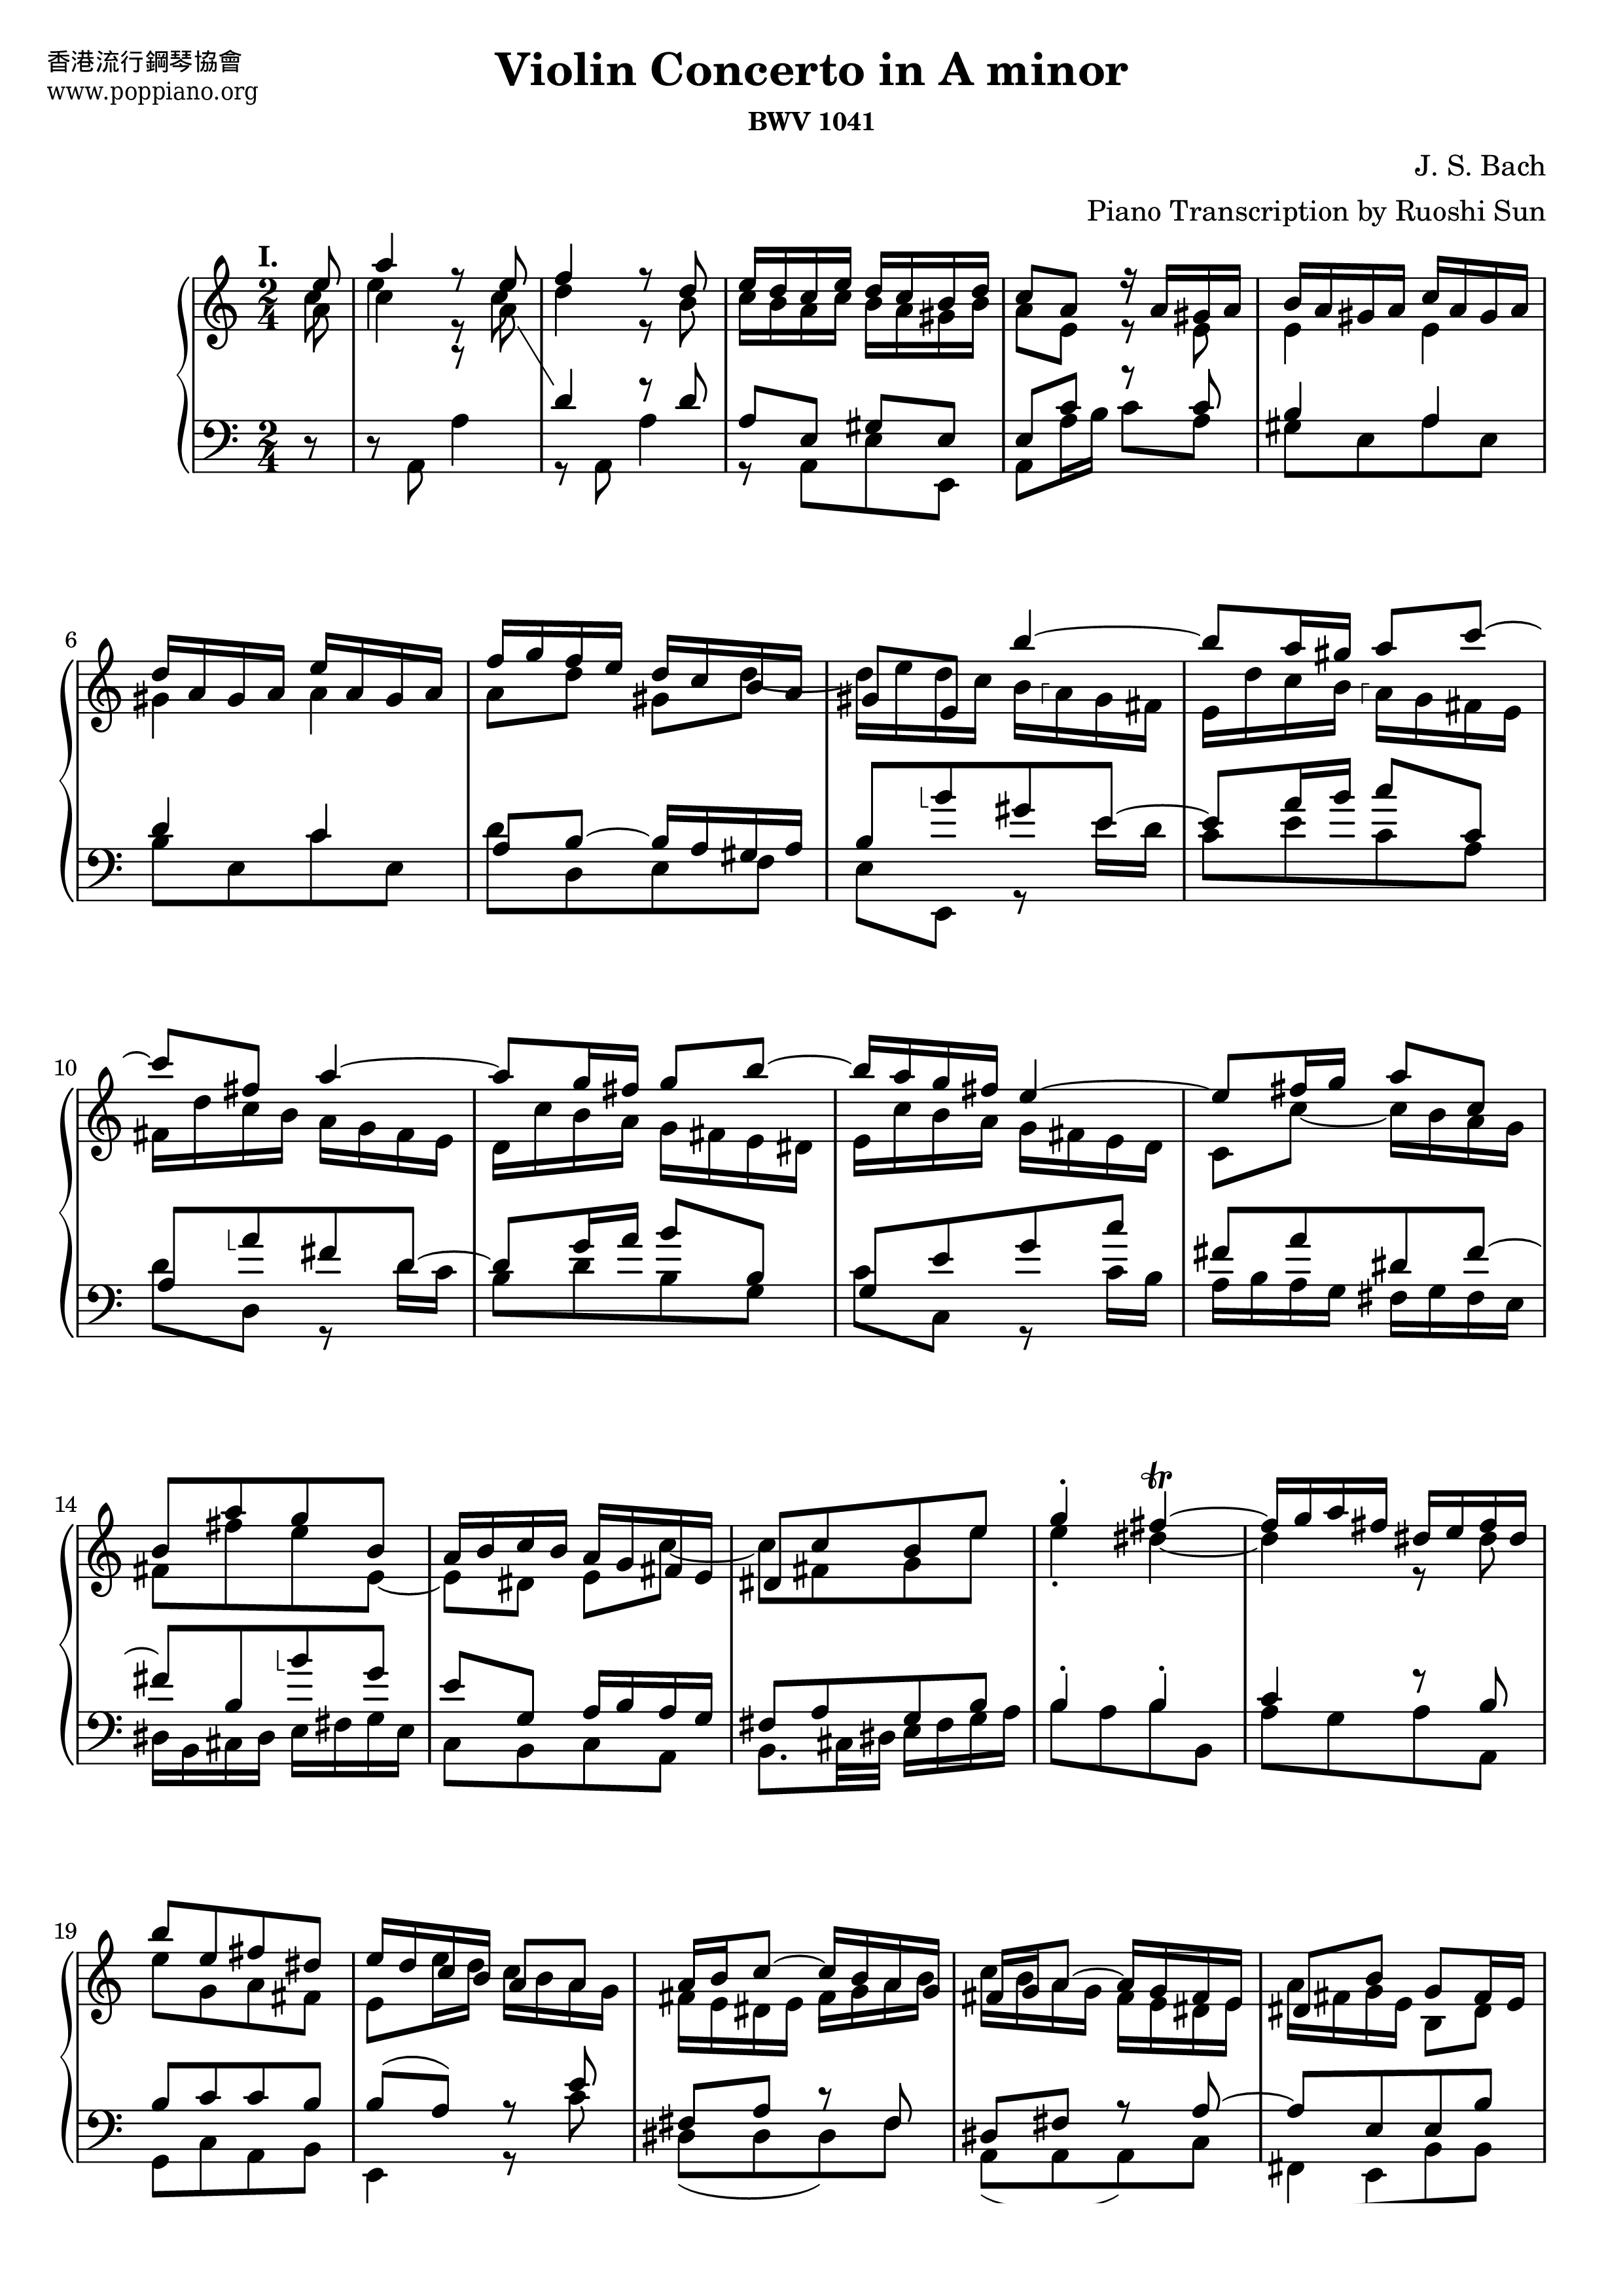 Violin Concerto No. 1 in A minor, BWV 1041: I. (Allegro moderato)ピアノ譜